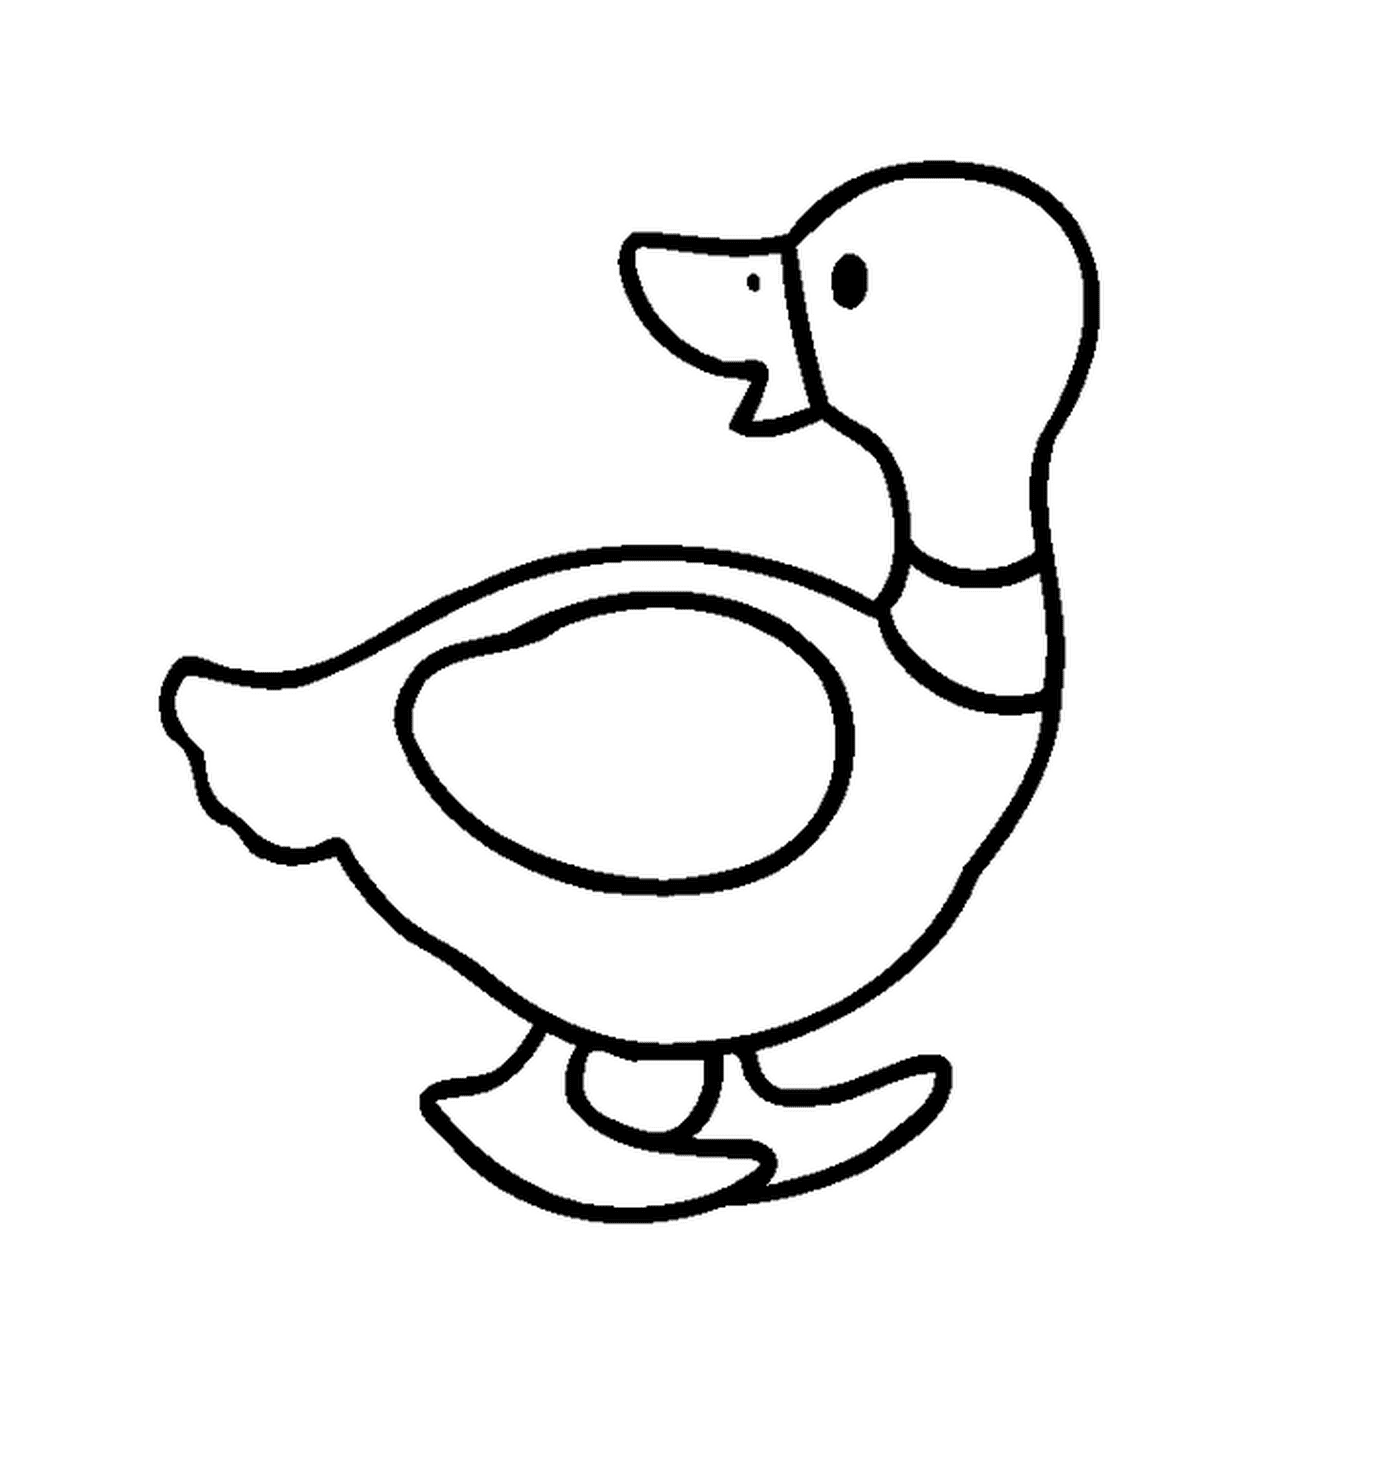  Um pato 